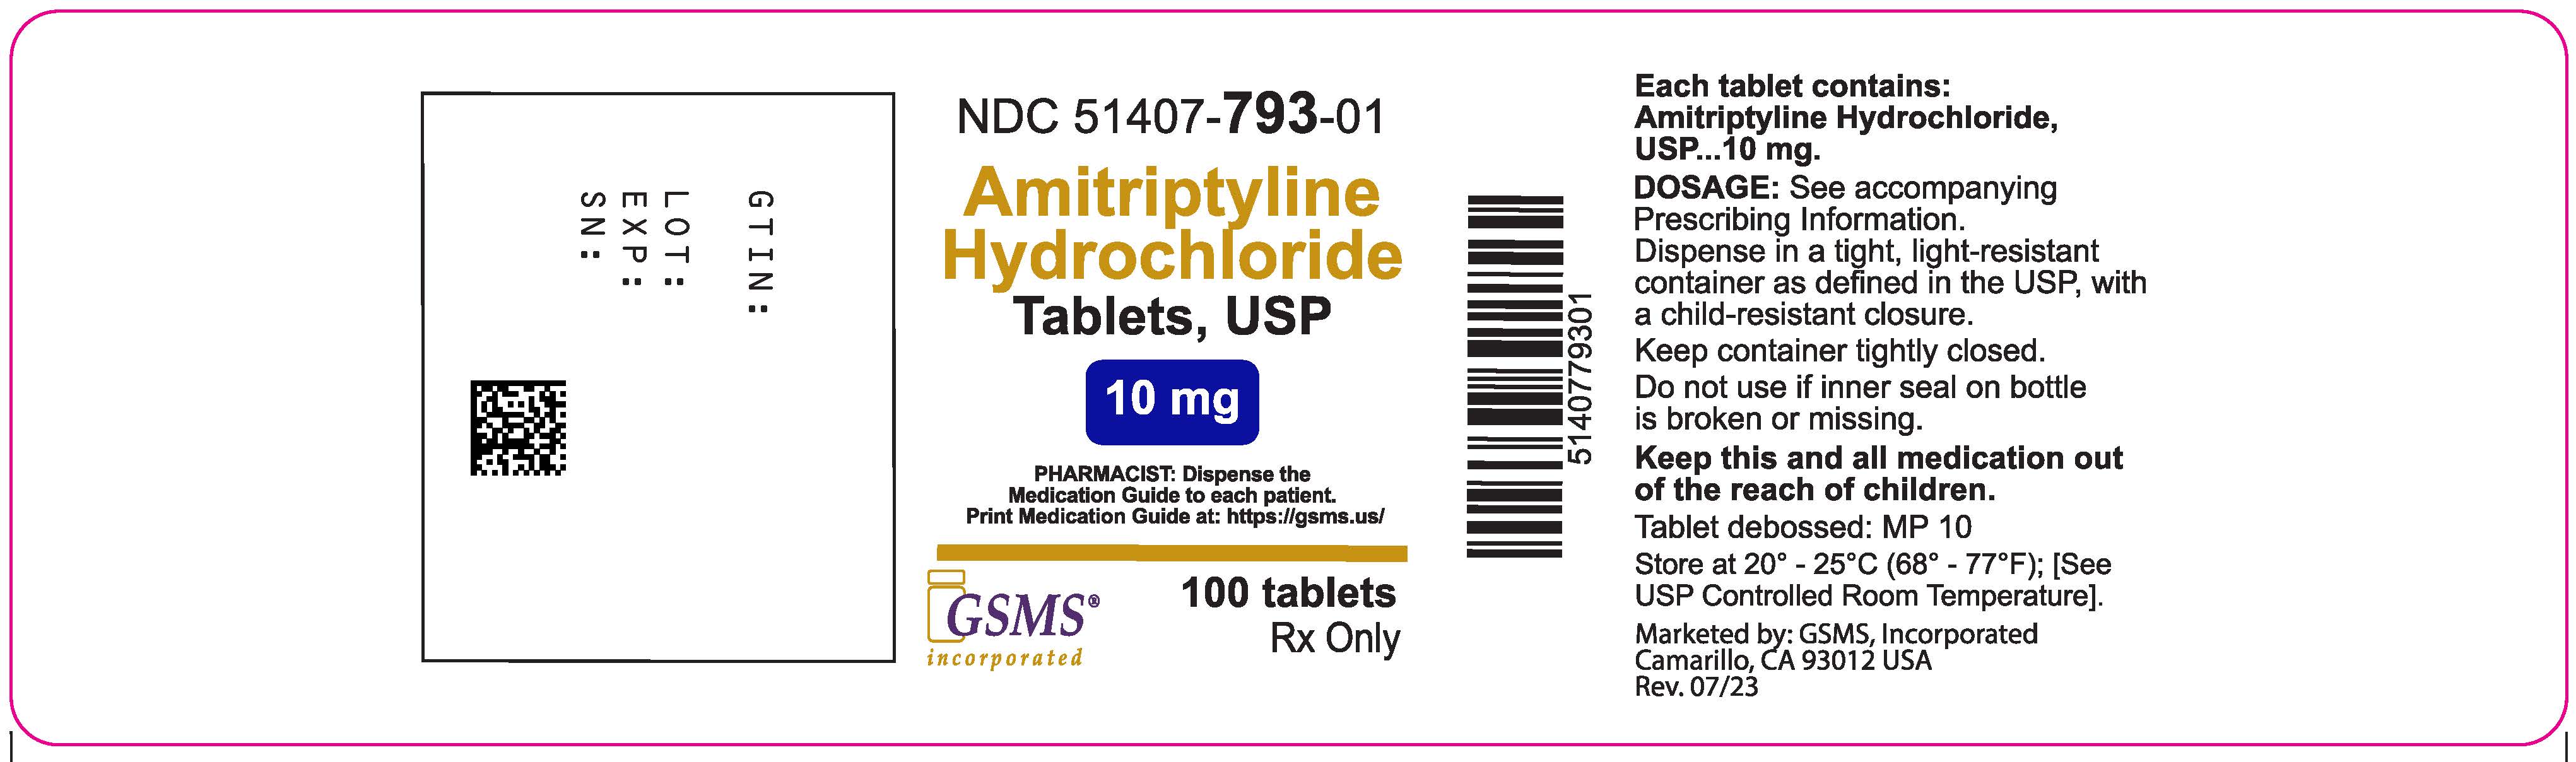 Amitriptyline Hydrochloride - Sun - 51407-793-01OL - 100c - Rev.0723.jpg